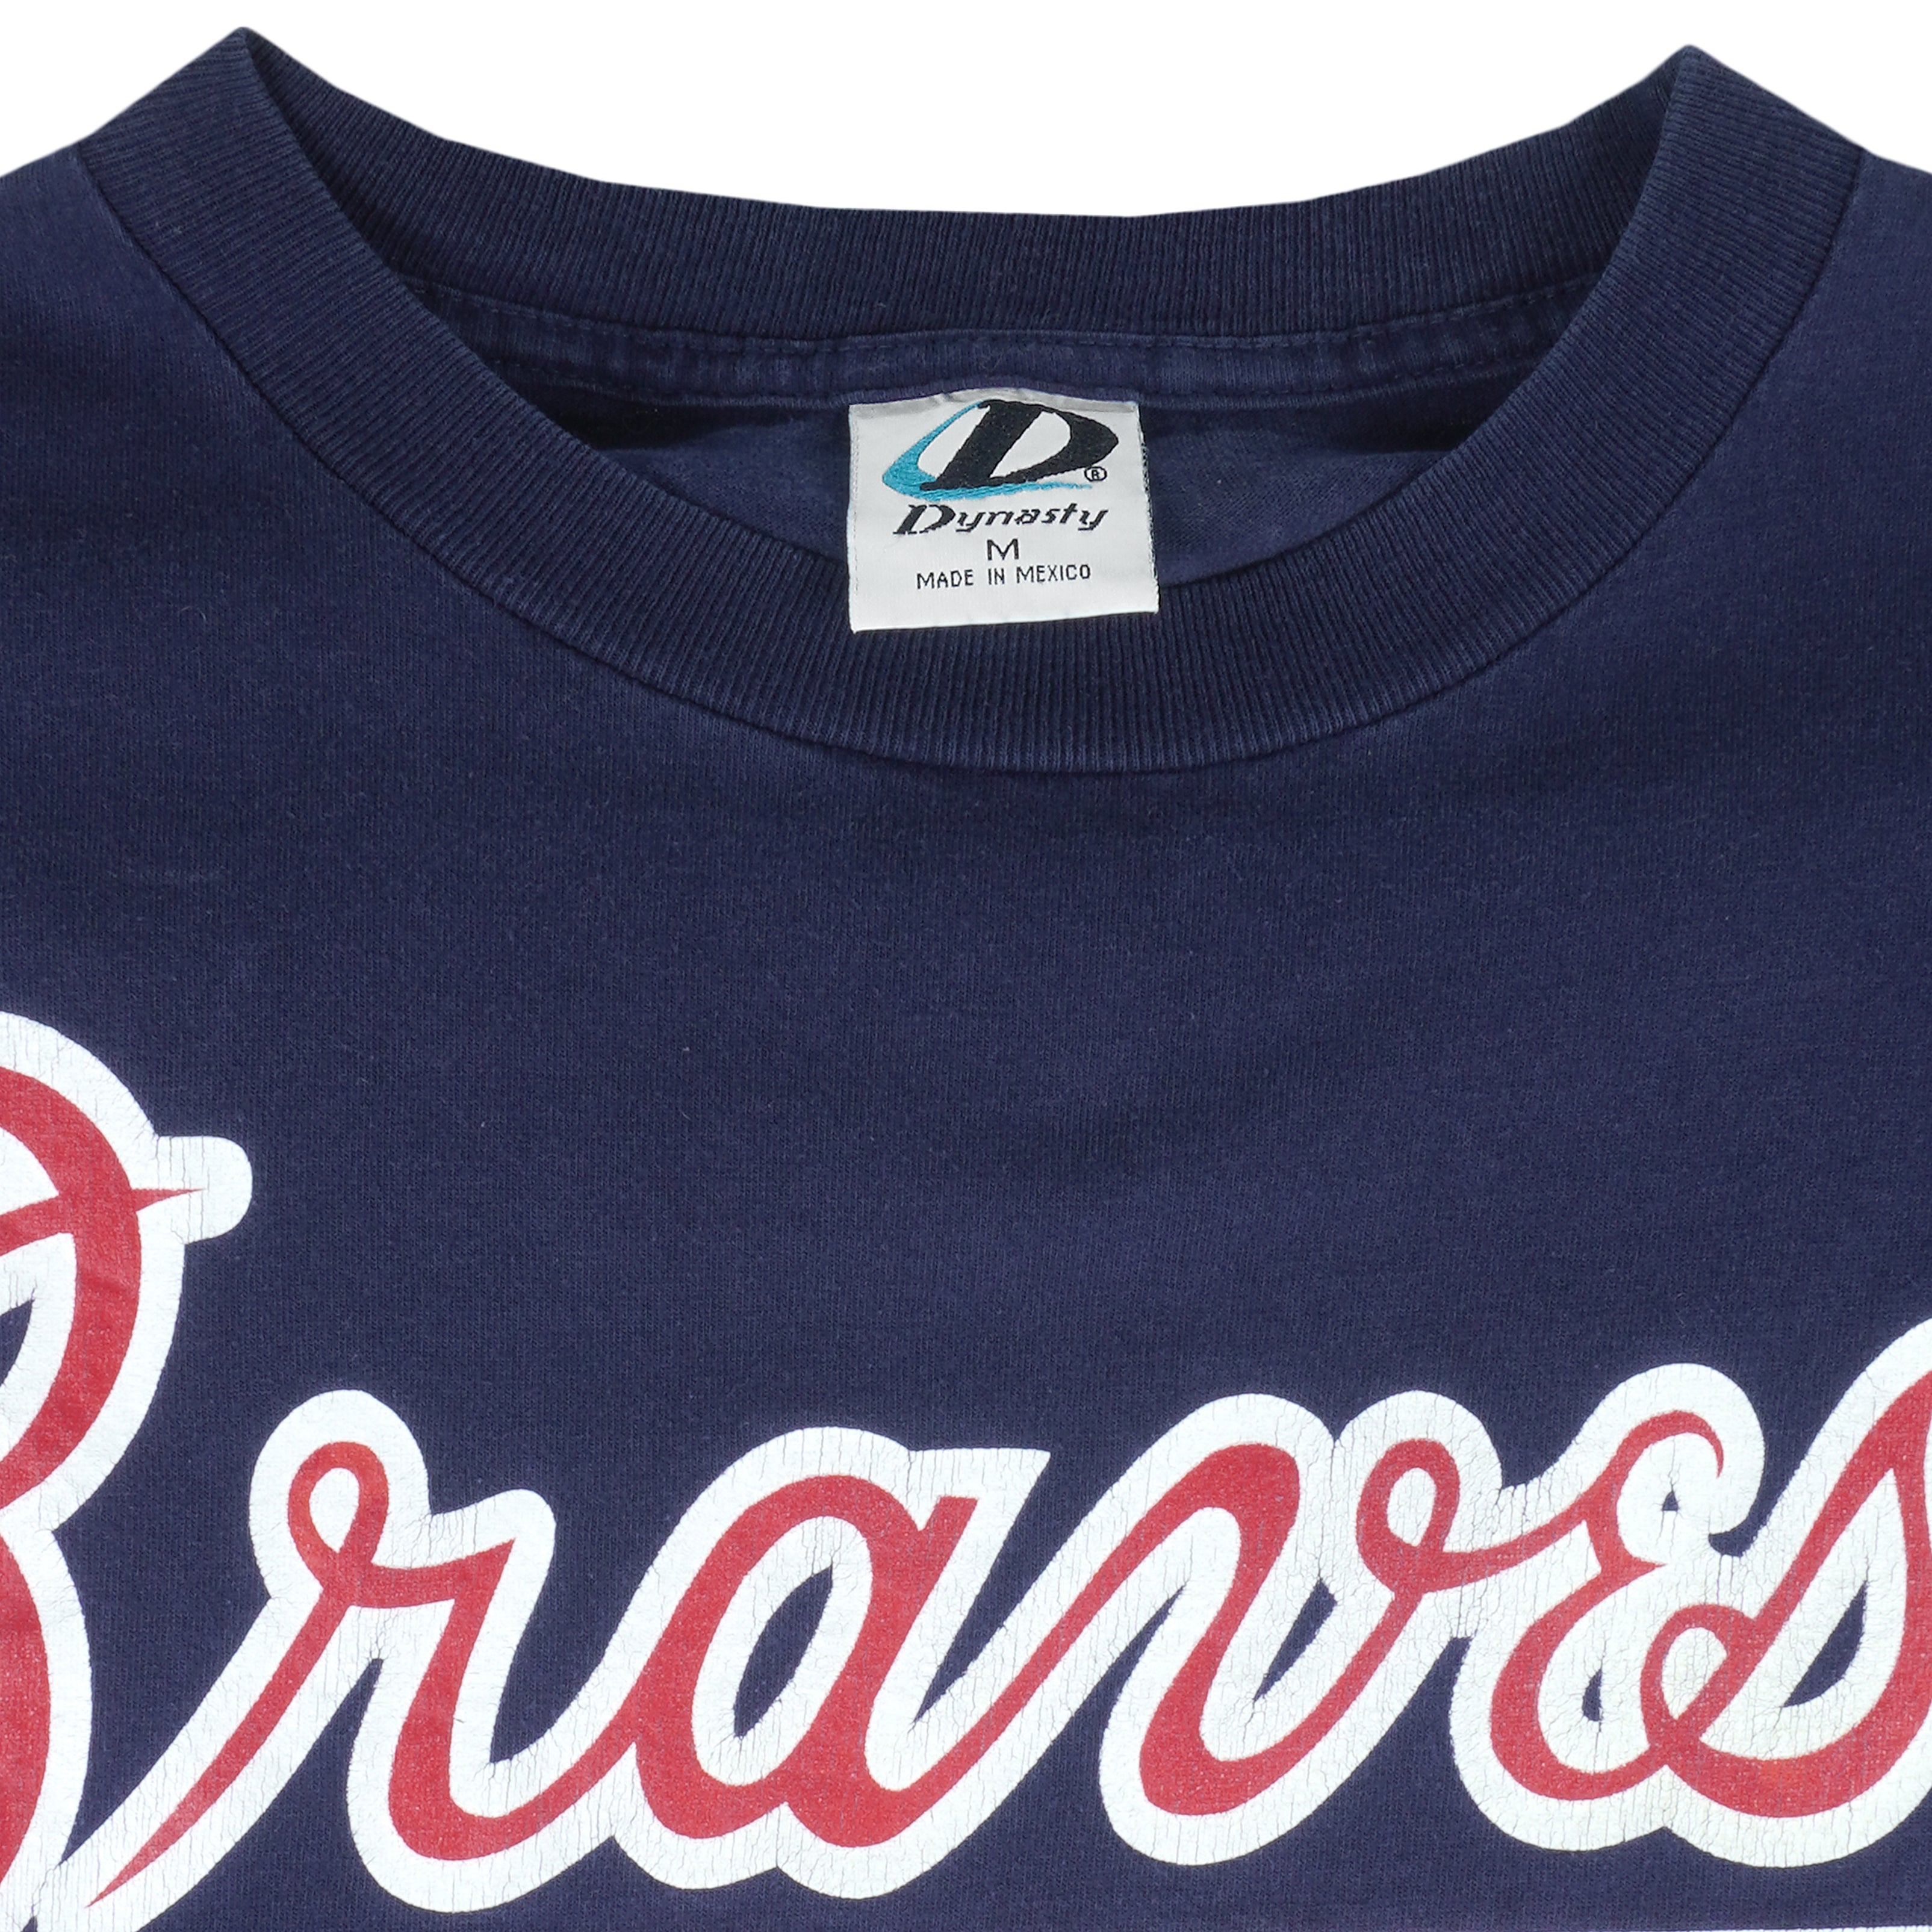 Vintage Chipper Jones Atlanta Braves T-shirt 90s MLB Baseball